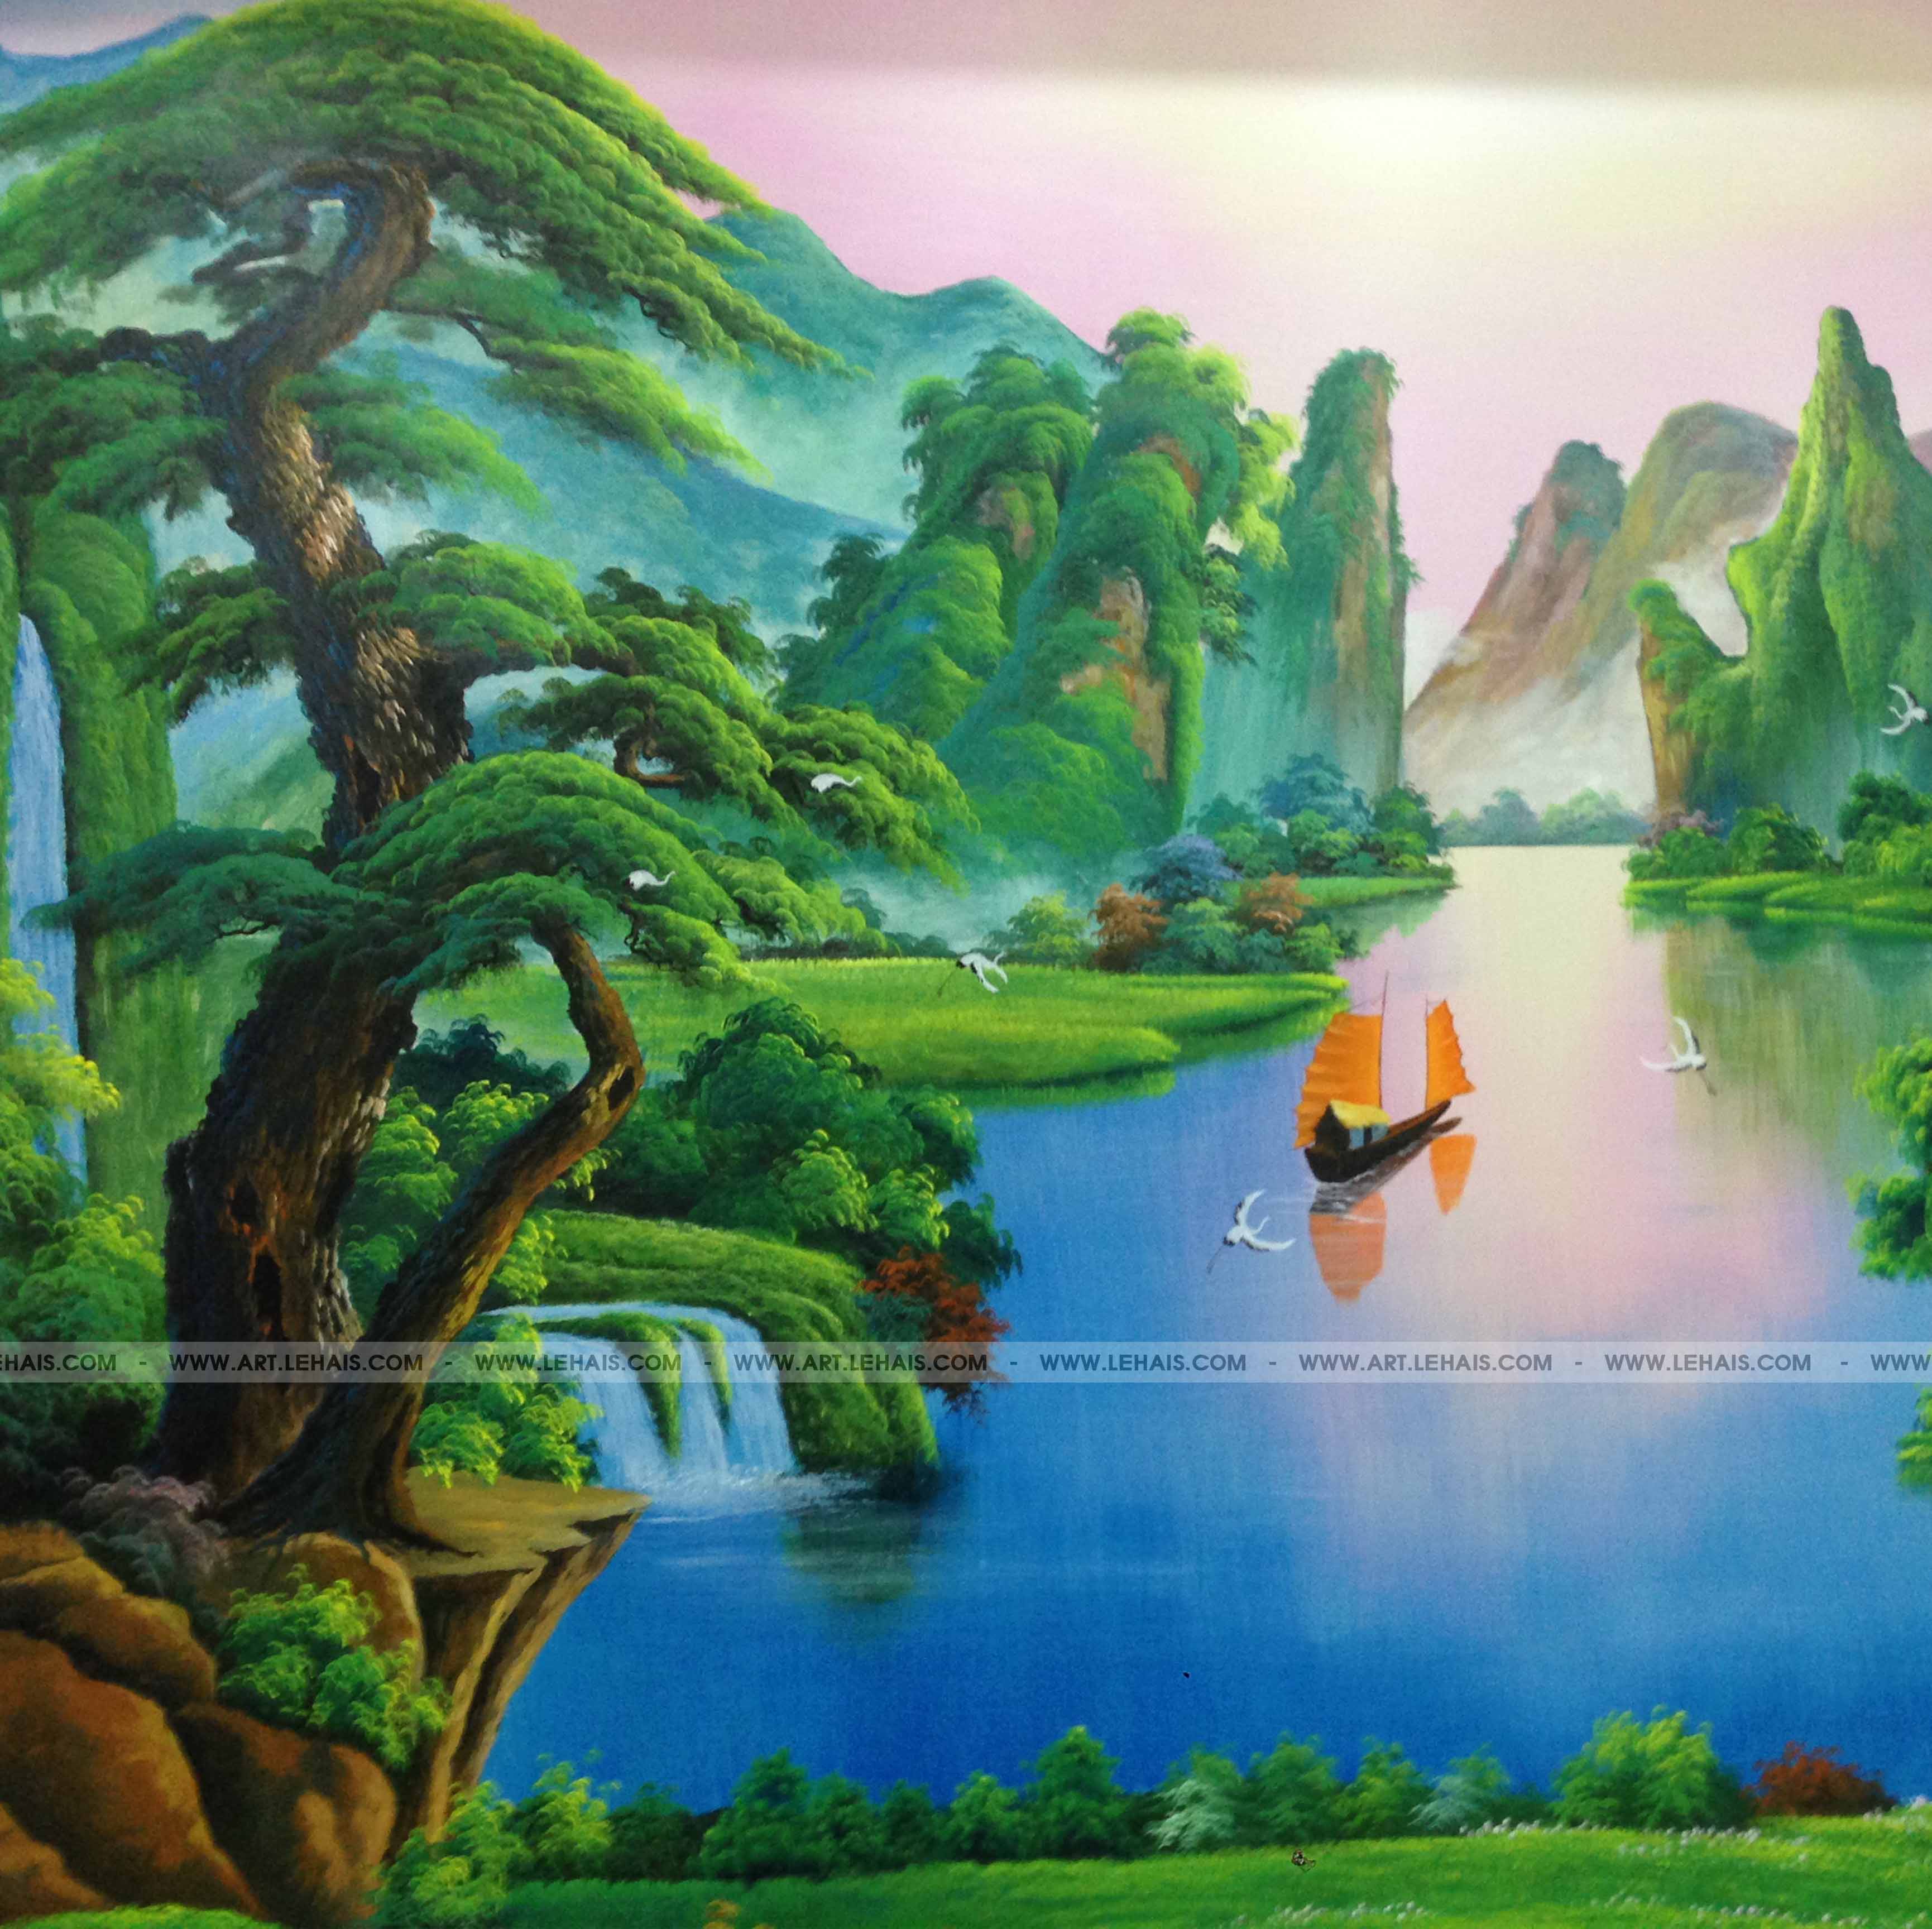 Vẽ tranh tường tại Sóc Sơn  Vẽ tranh tường 3D đẹp giá rẻ nhất tại Hà Nội   Thi công trọn gói